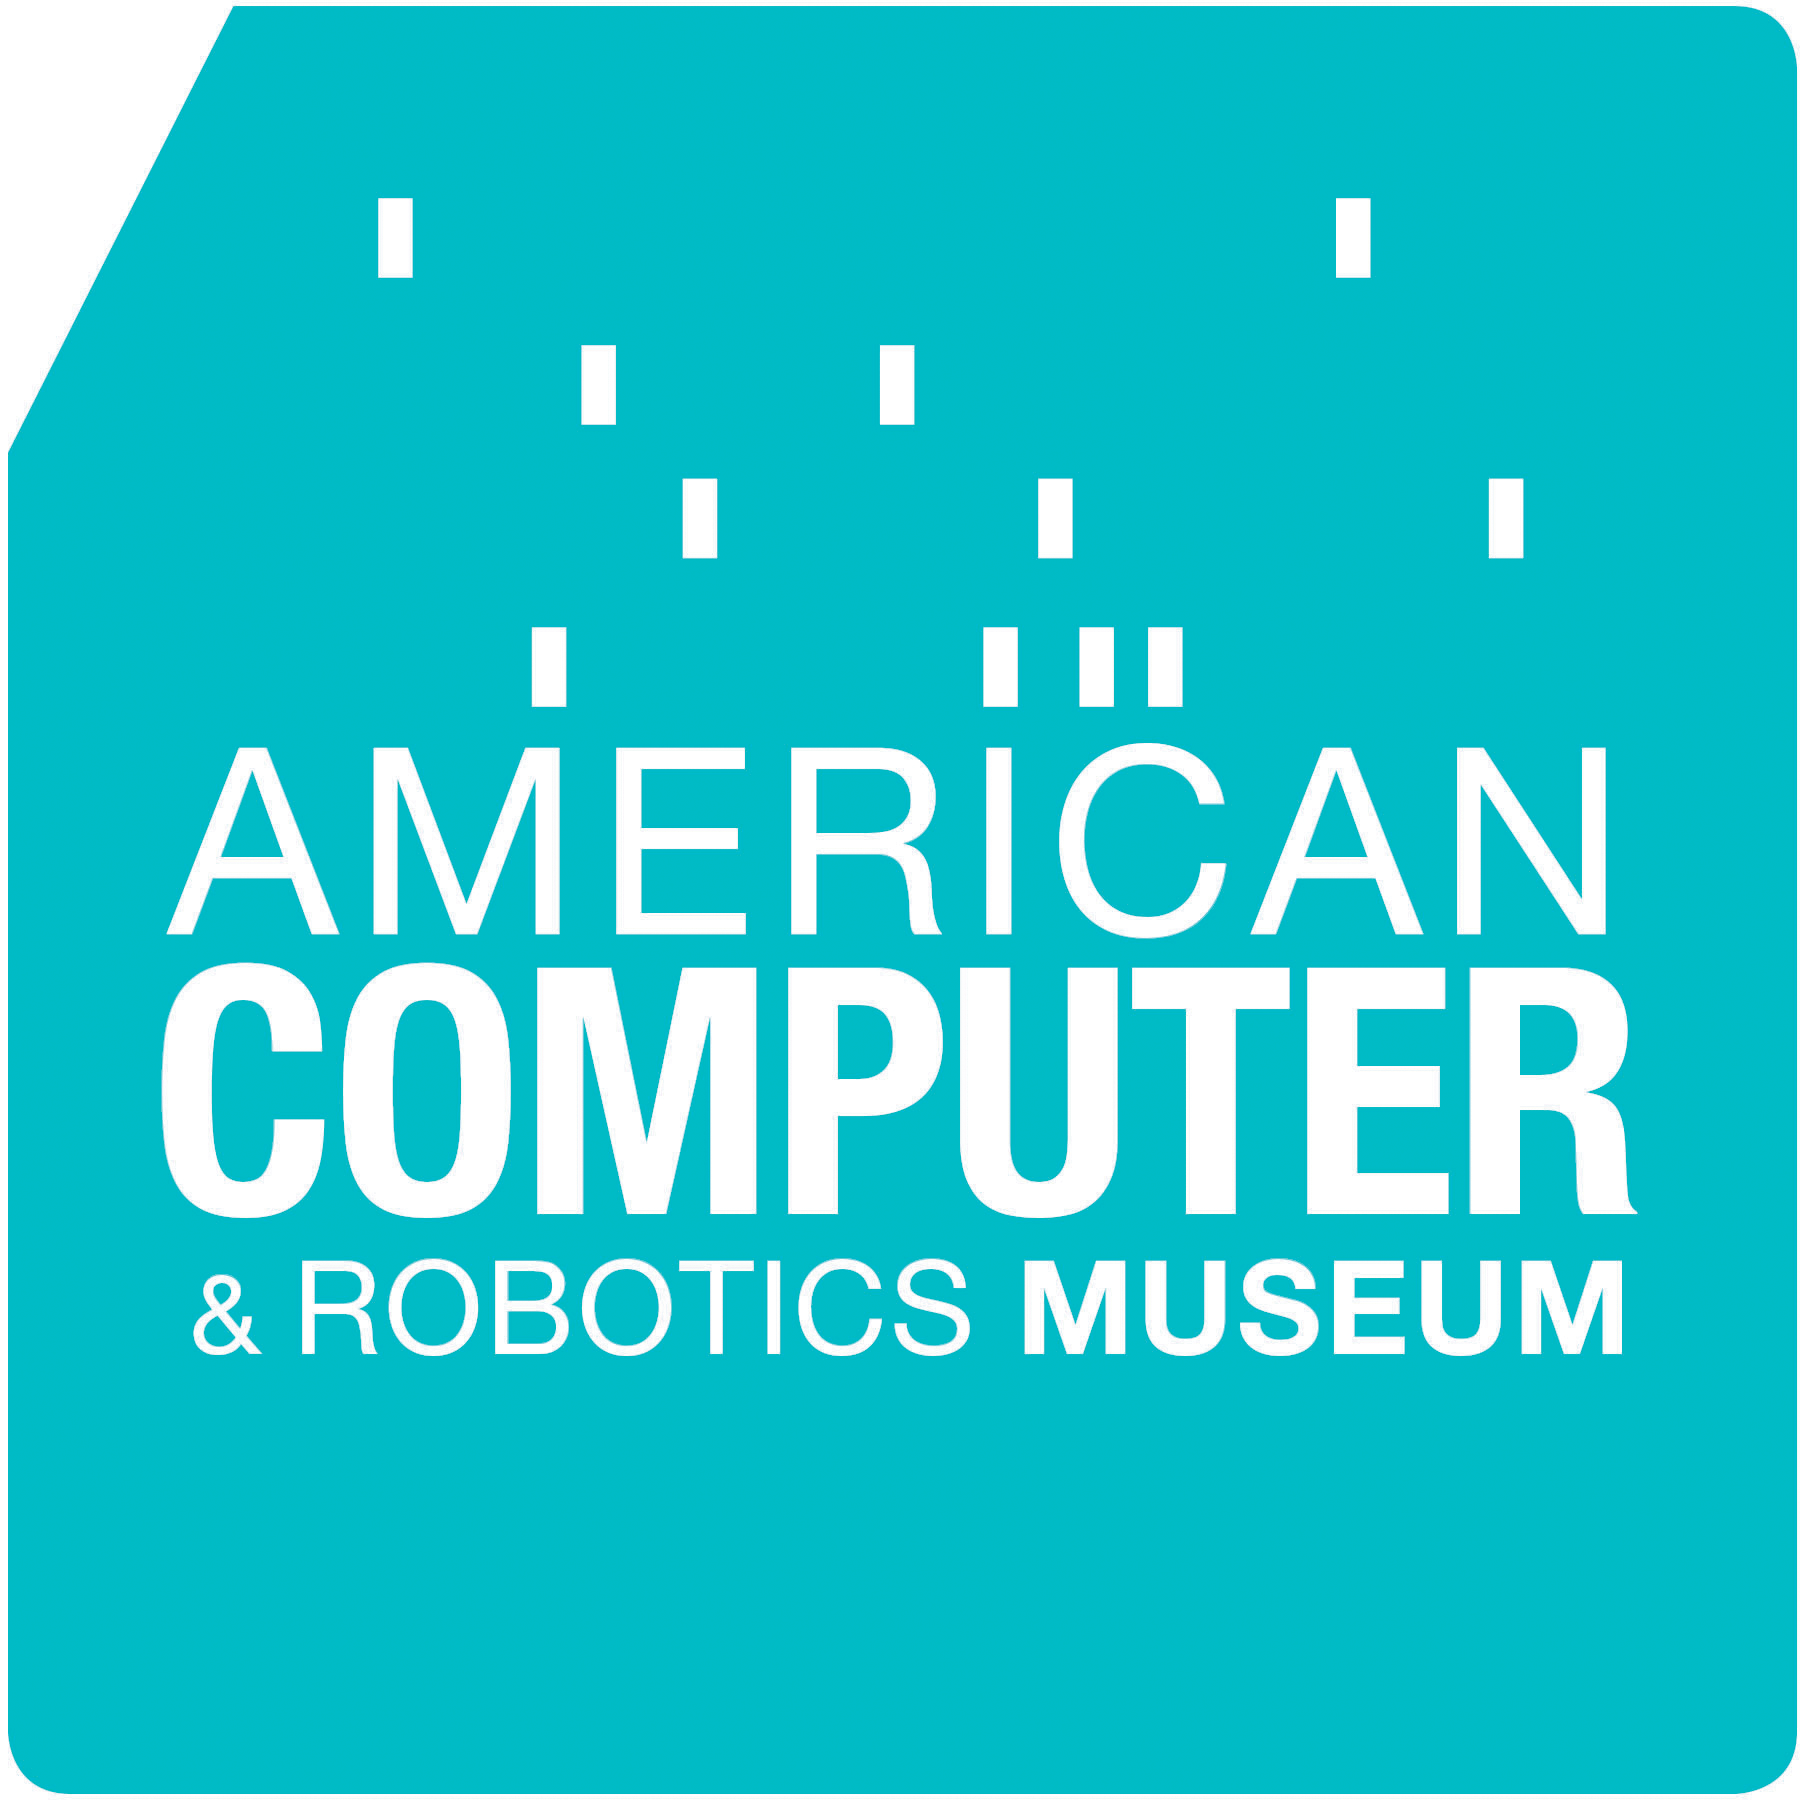 American Computer & Robotics Museum Print Ad